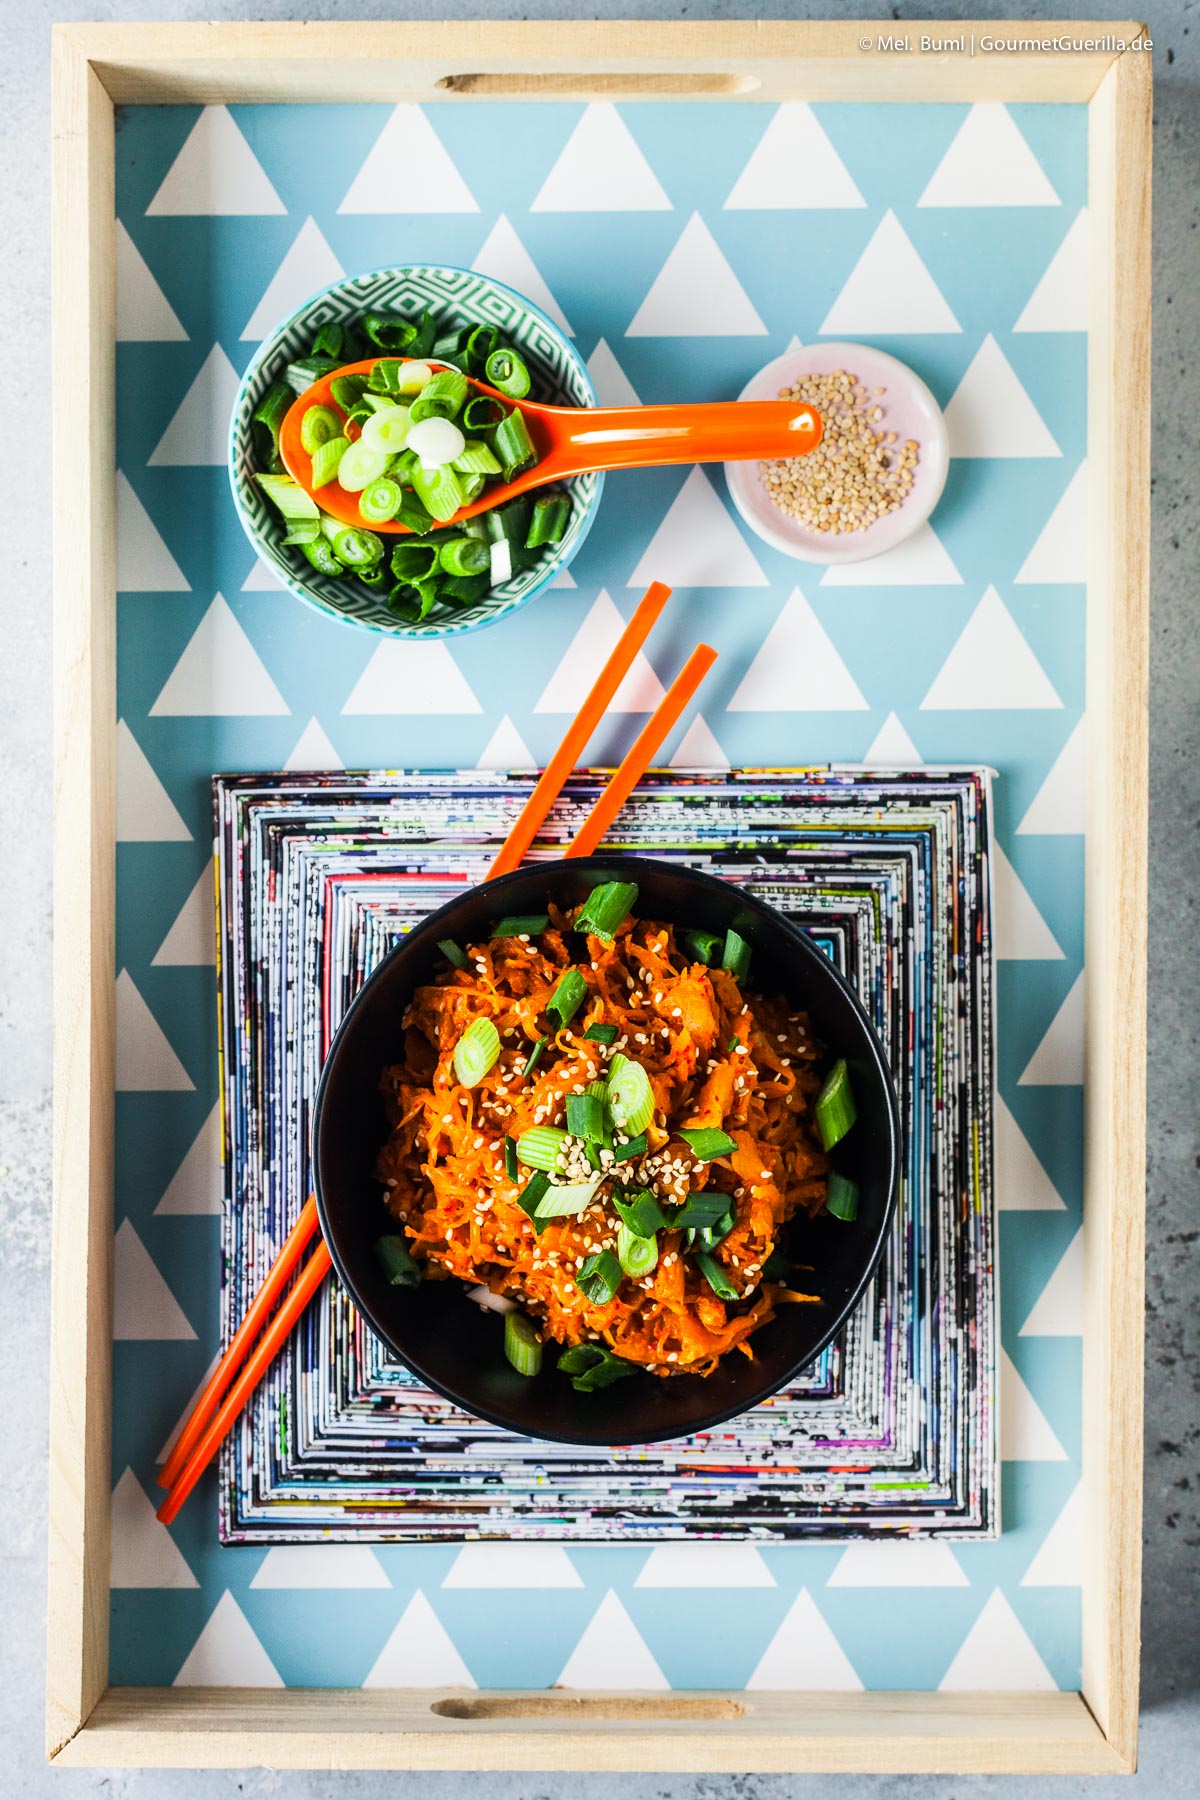 2-Minuten Instant Kimchi - blitzschnell, koreanisch scharf mit viel Vitamin C | GourmetGuerilla.de